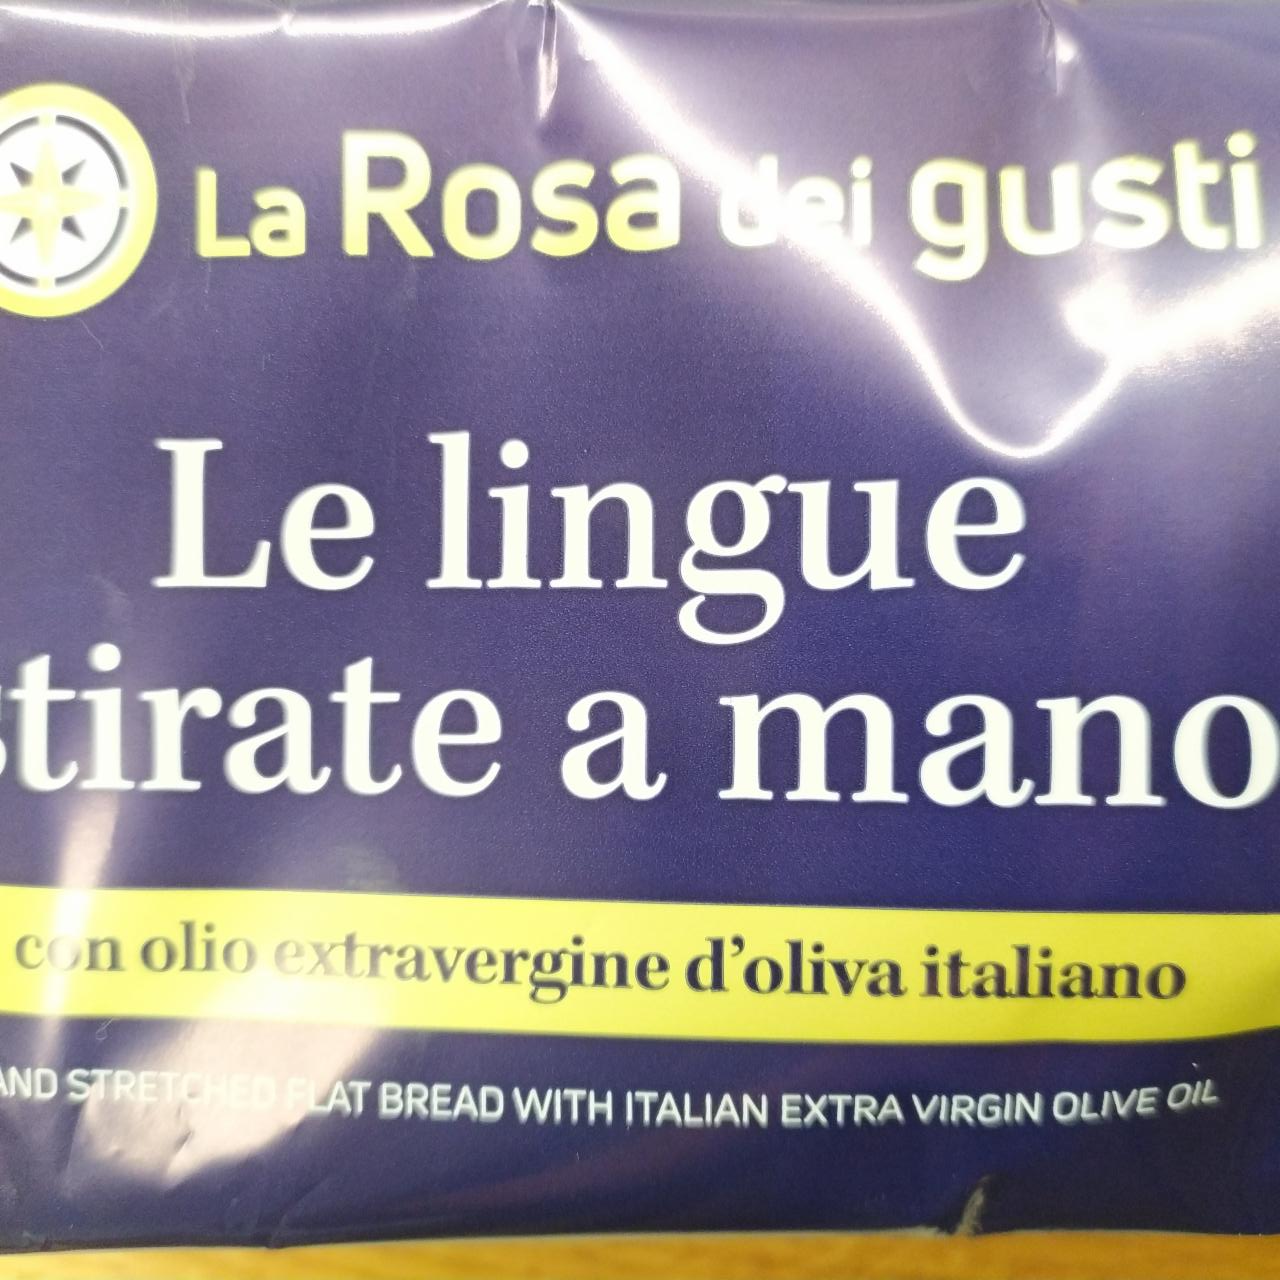 Fotografie - Le lingue stirate a mano con olio extravergine d'oliva italiano La Rosa dei gusti